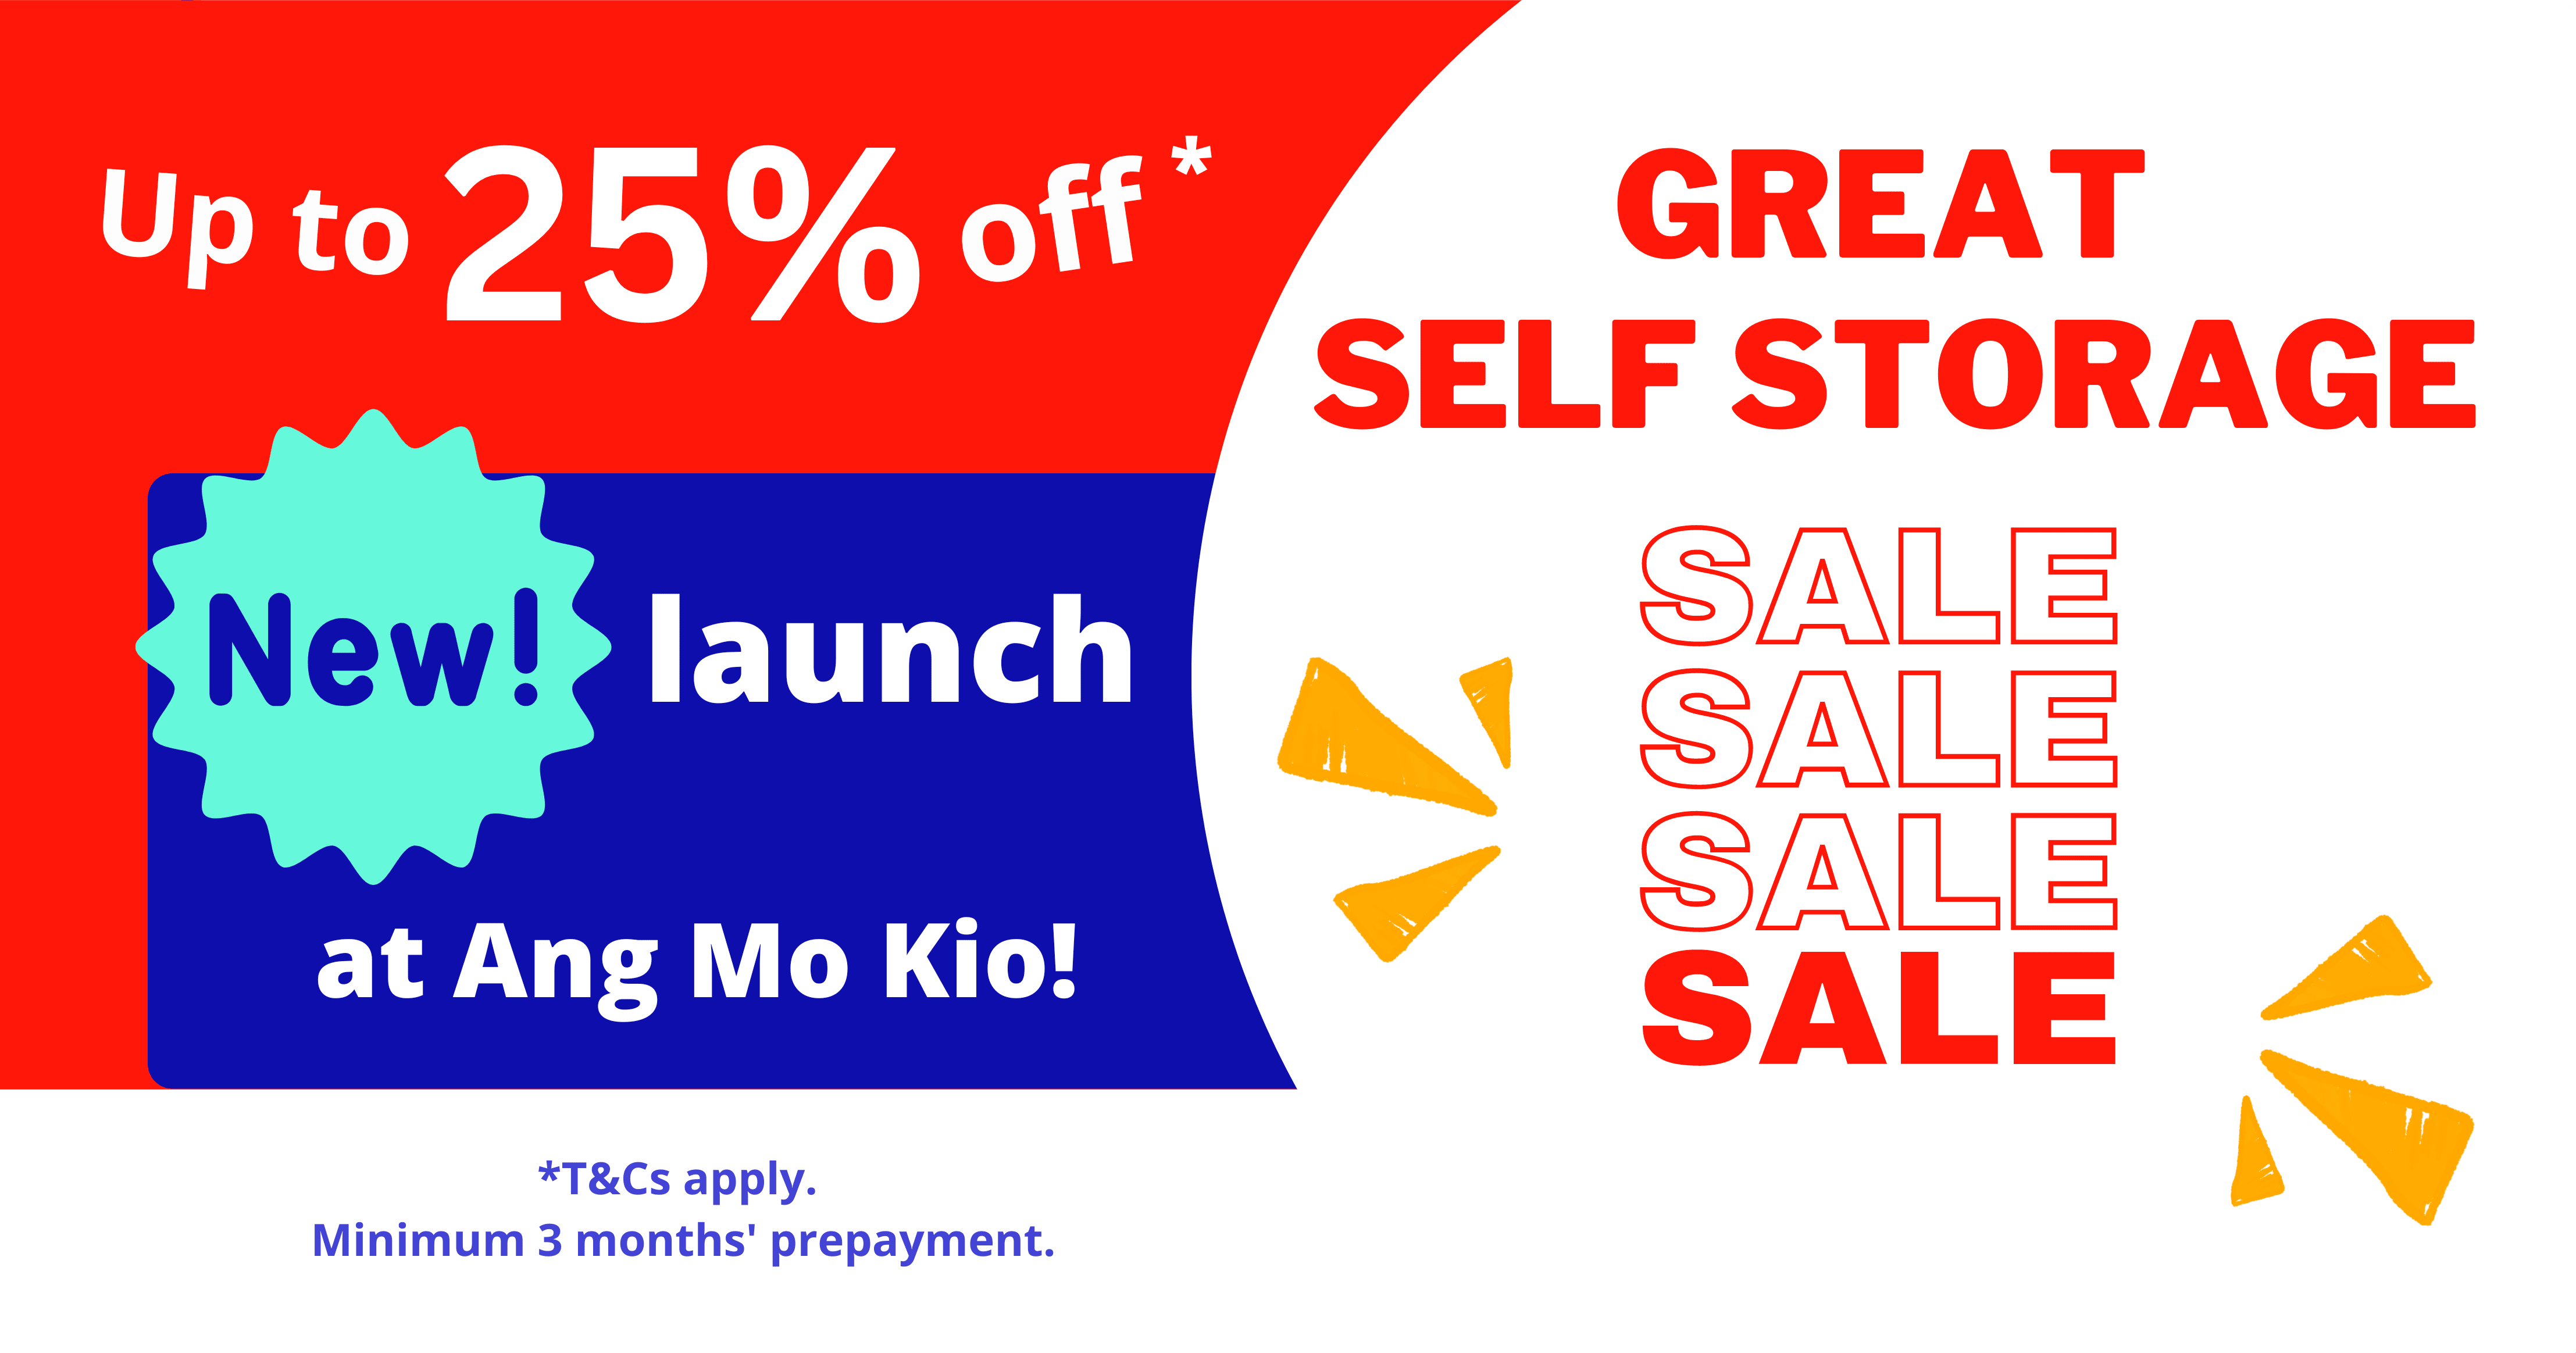 Great Self Storage Sale Ang Mo Kio Sep 22